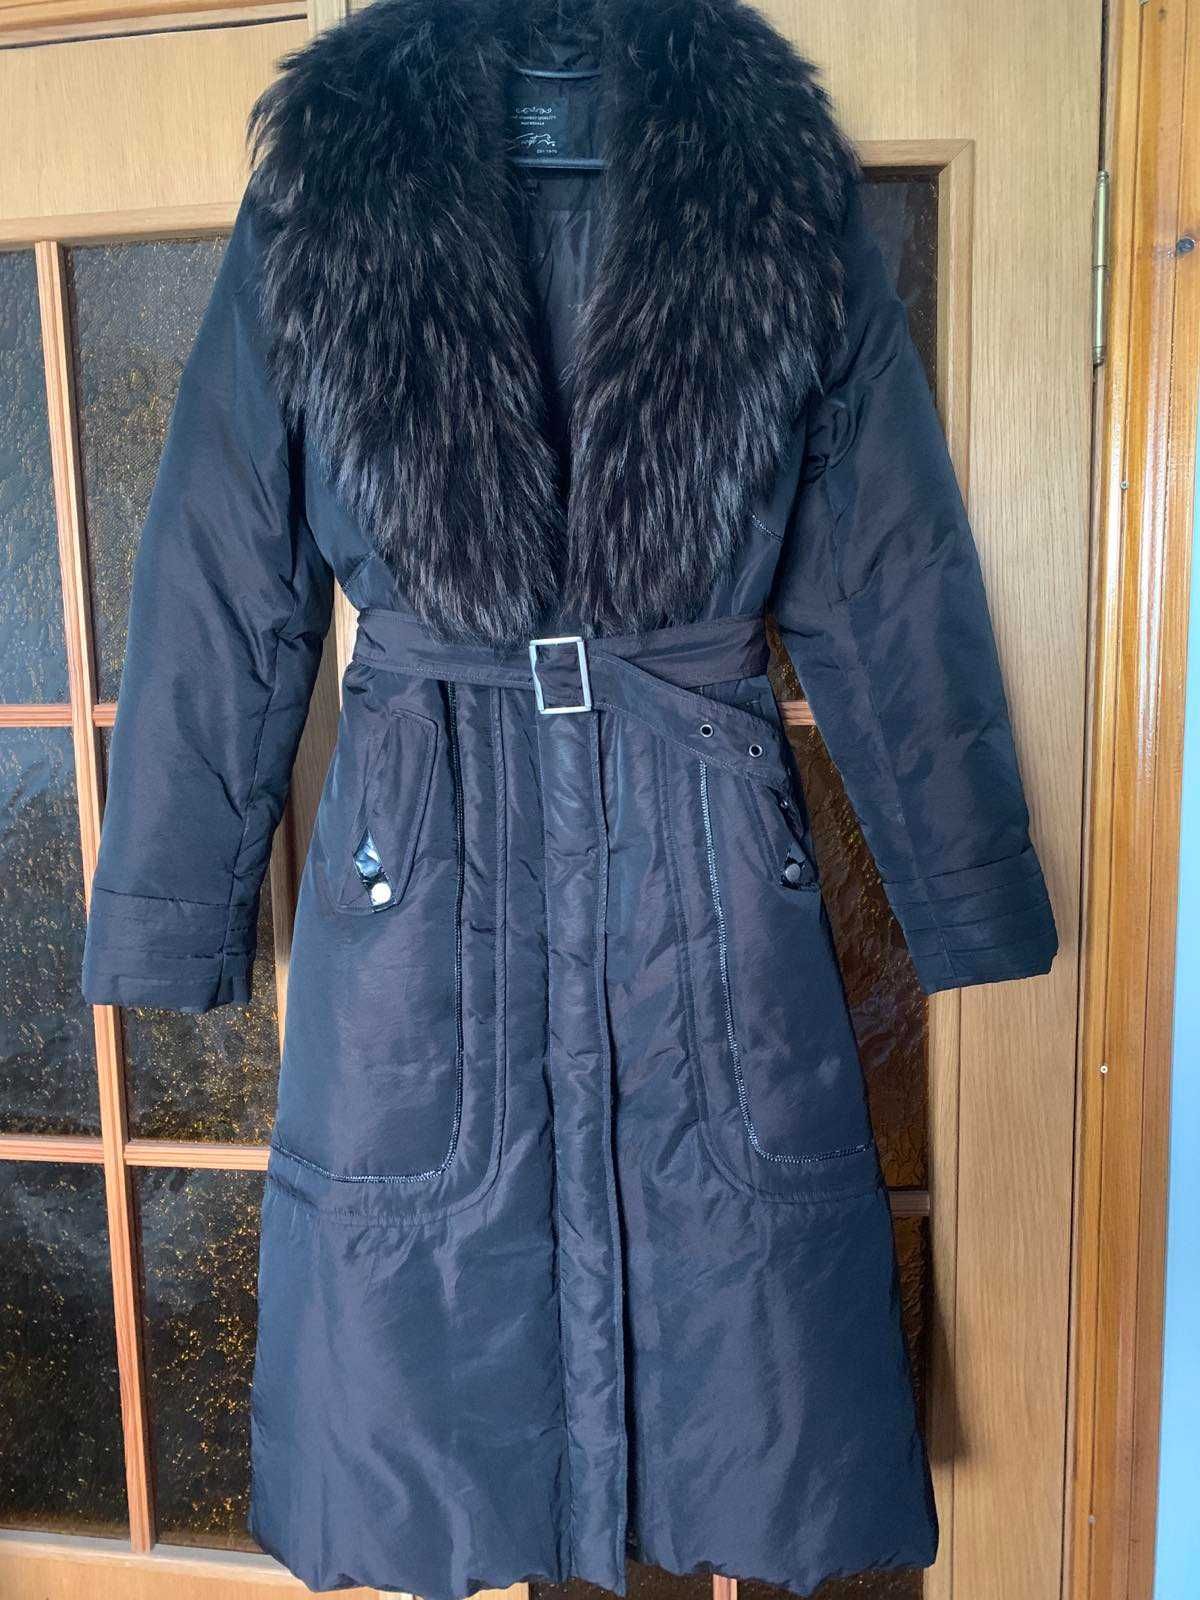 Куртка пальто тёплое пихора с мехом енота 46-48.